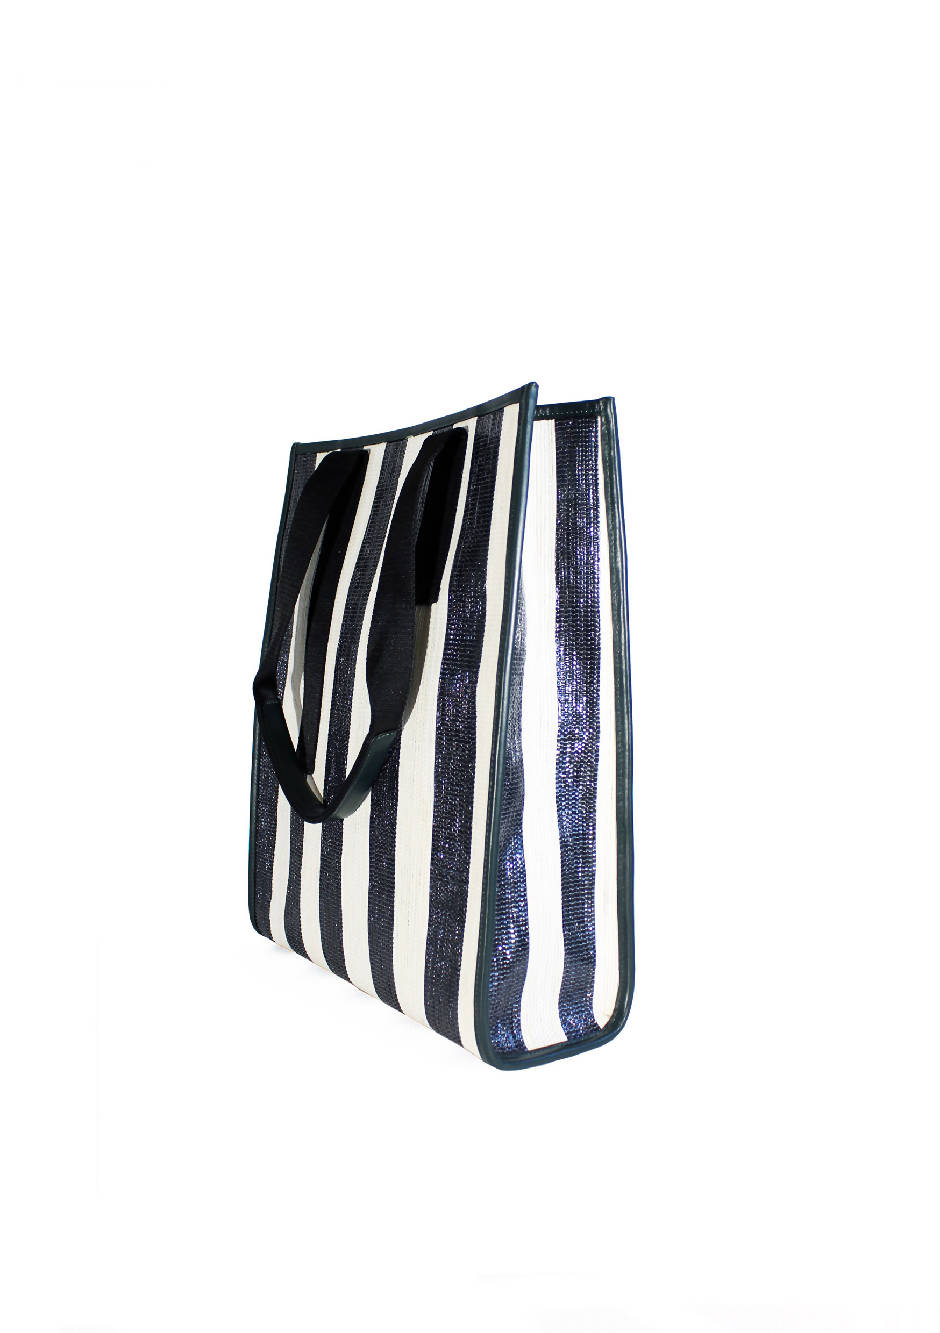 Casc8 Asgar Striped Black White Bag